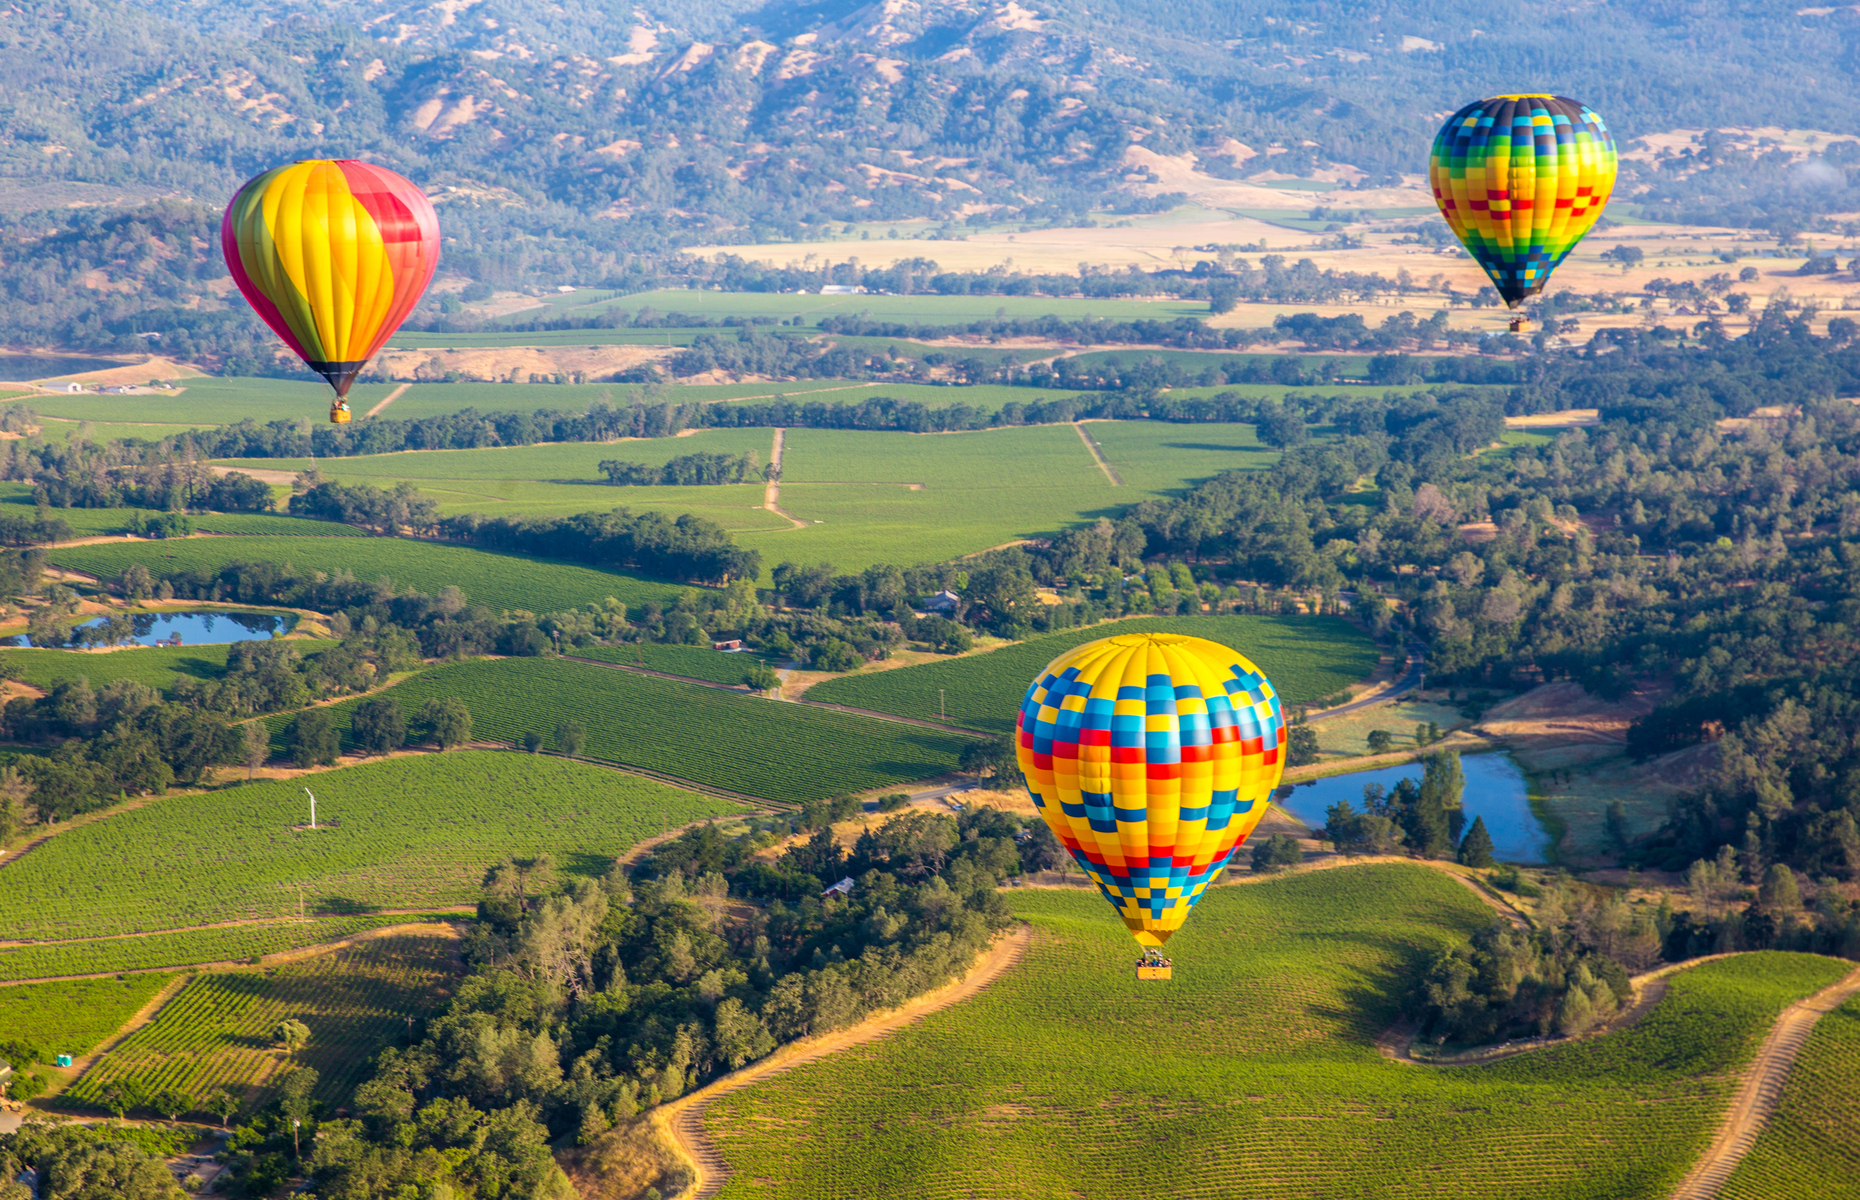 Napa Valley hot air ballons